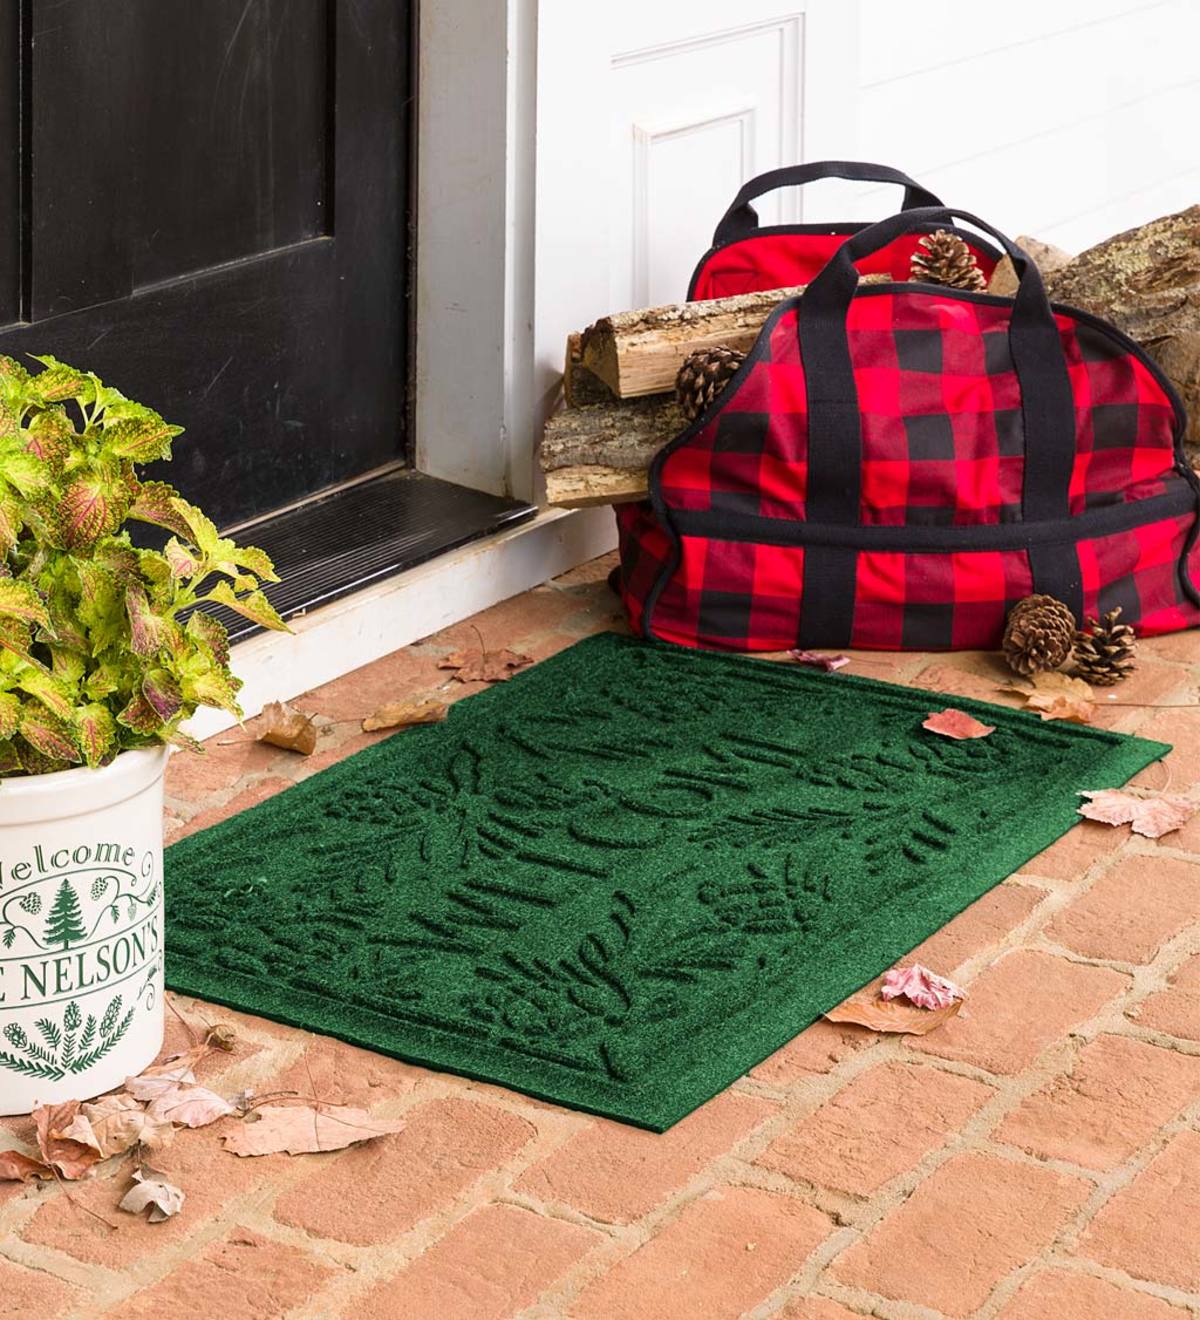 Waterhog Pine Welcome Doormat, 2' x 3'